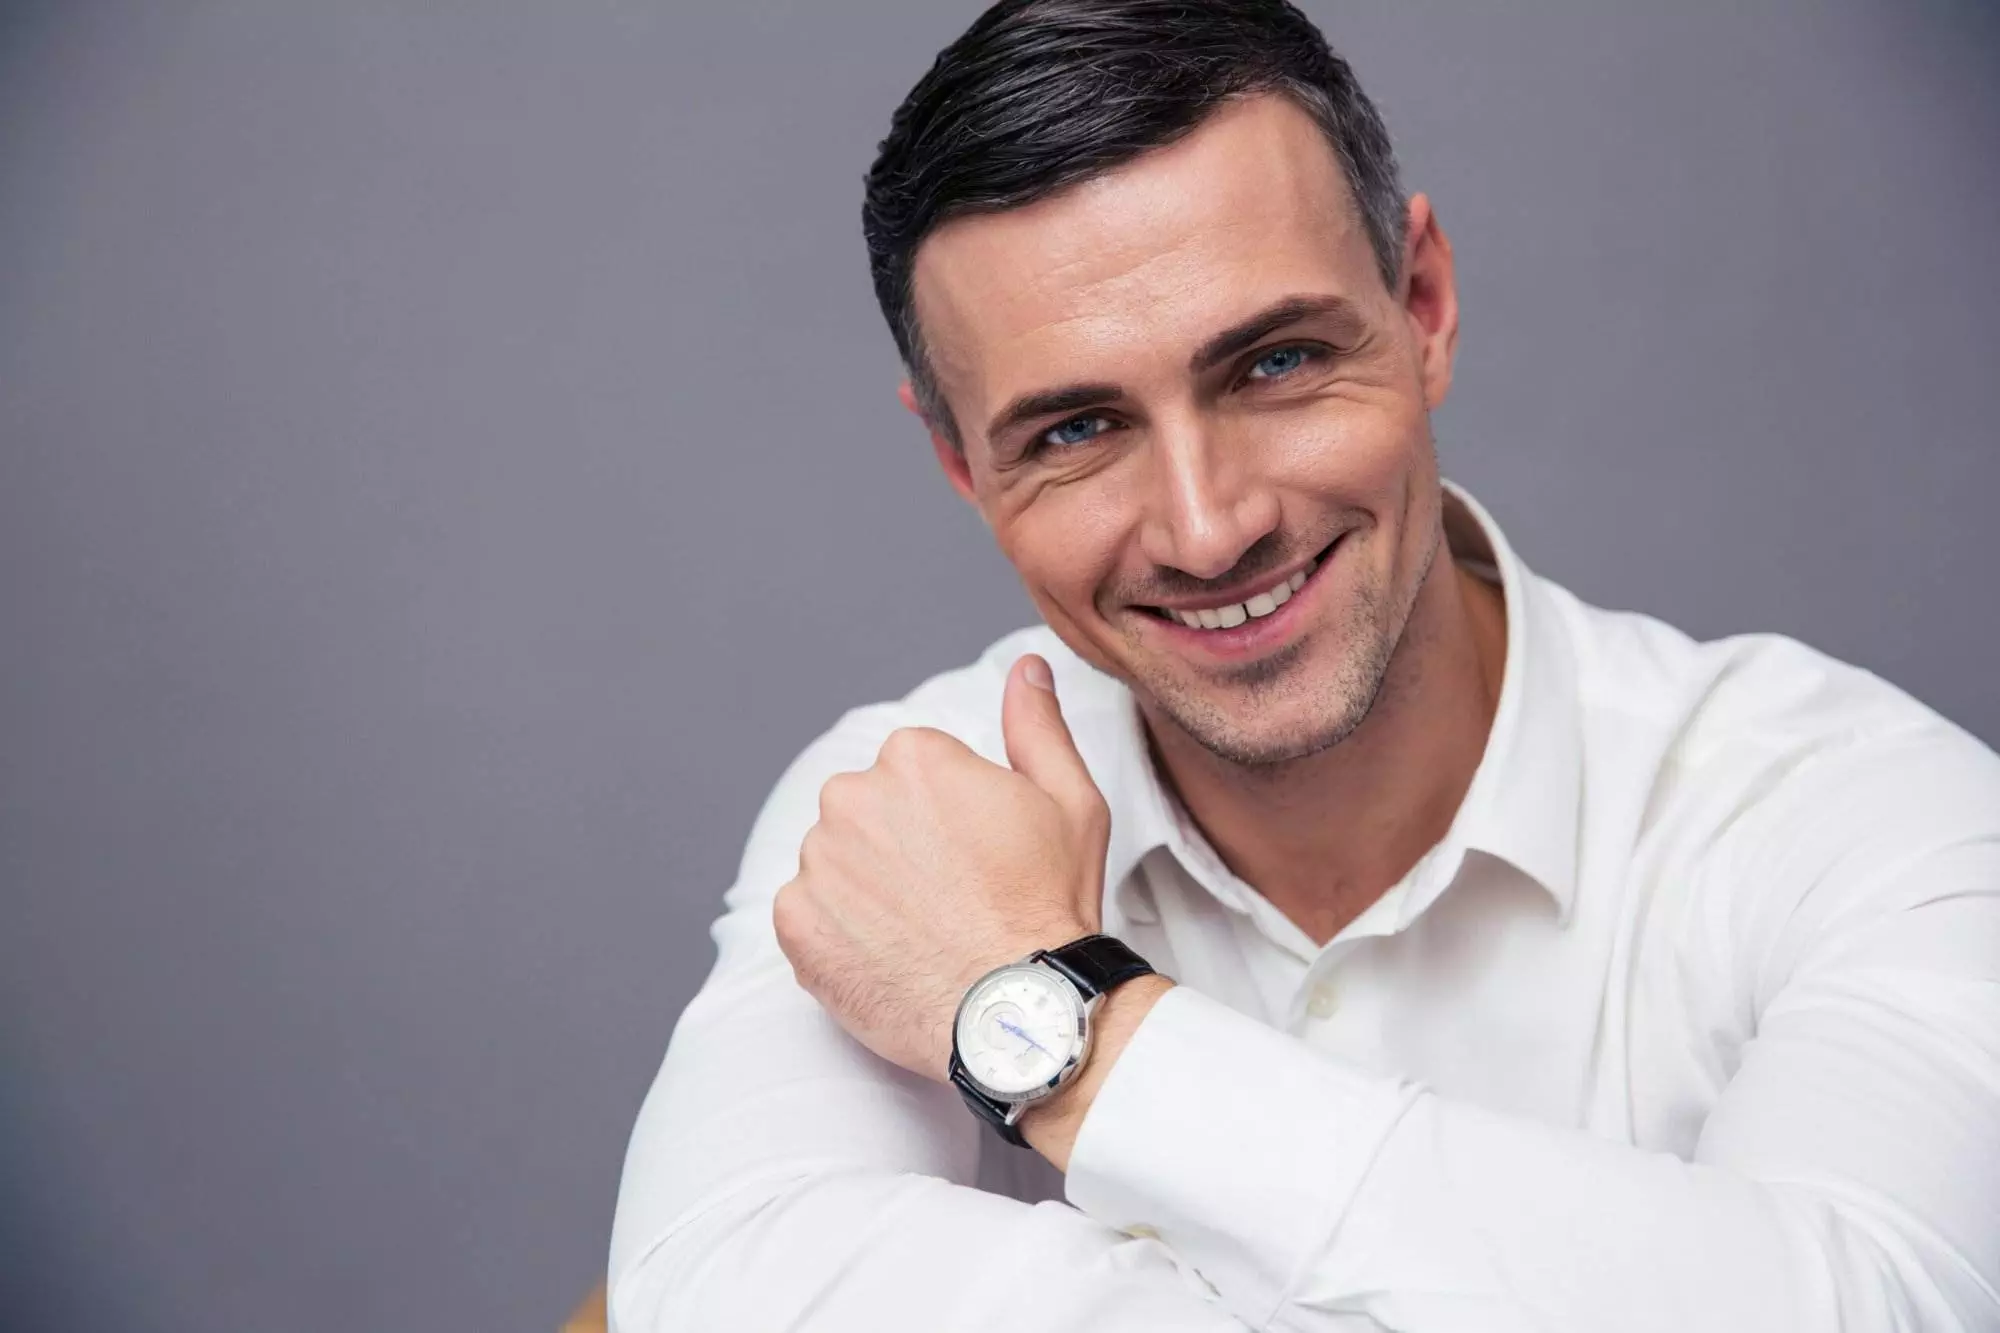 Smiling man in white shirt wearing wristwatch.